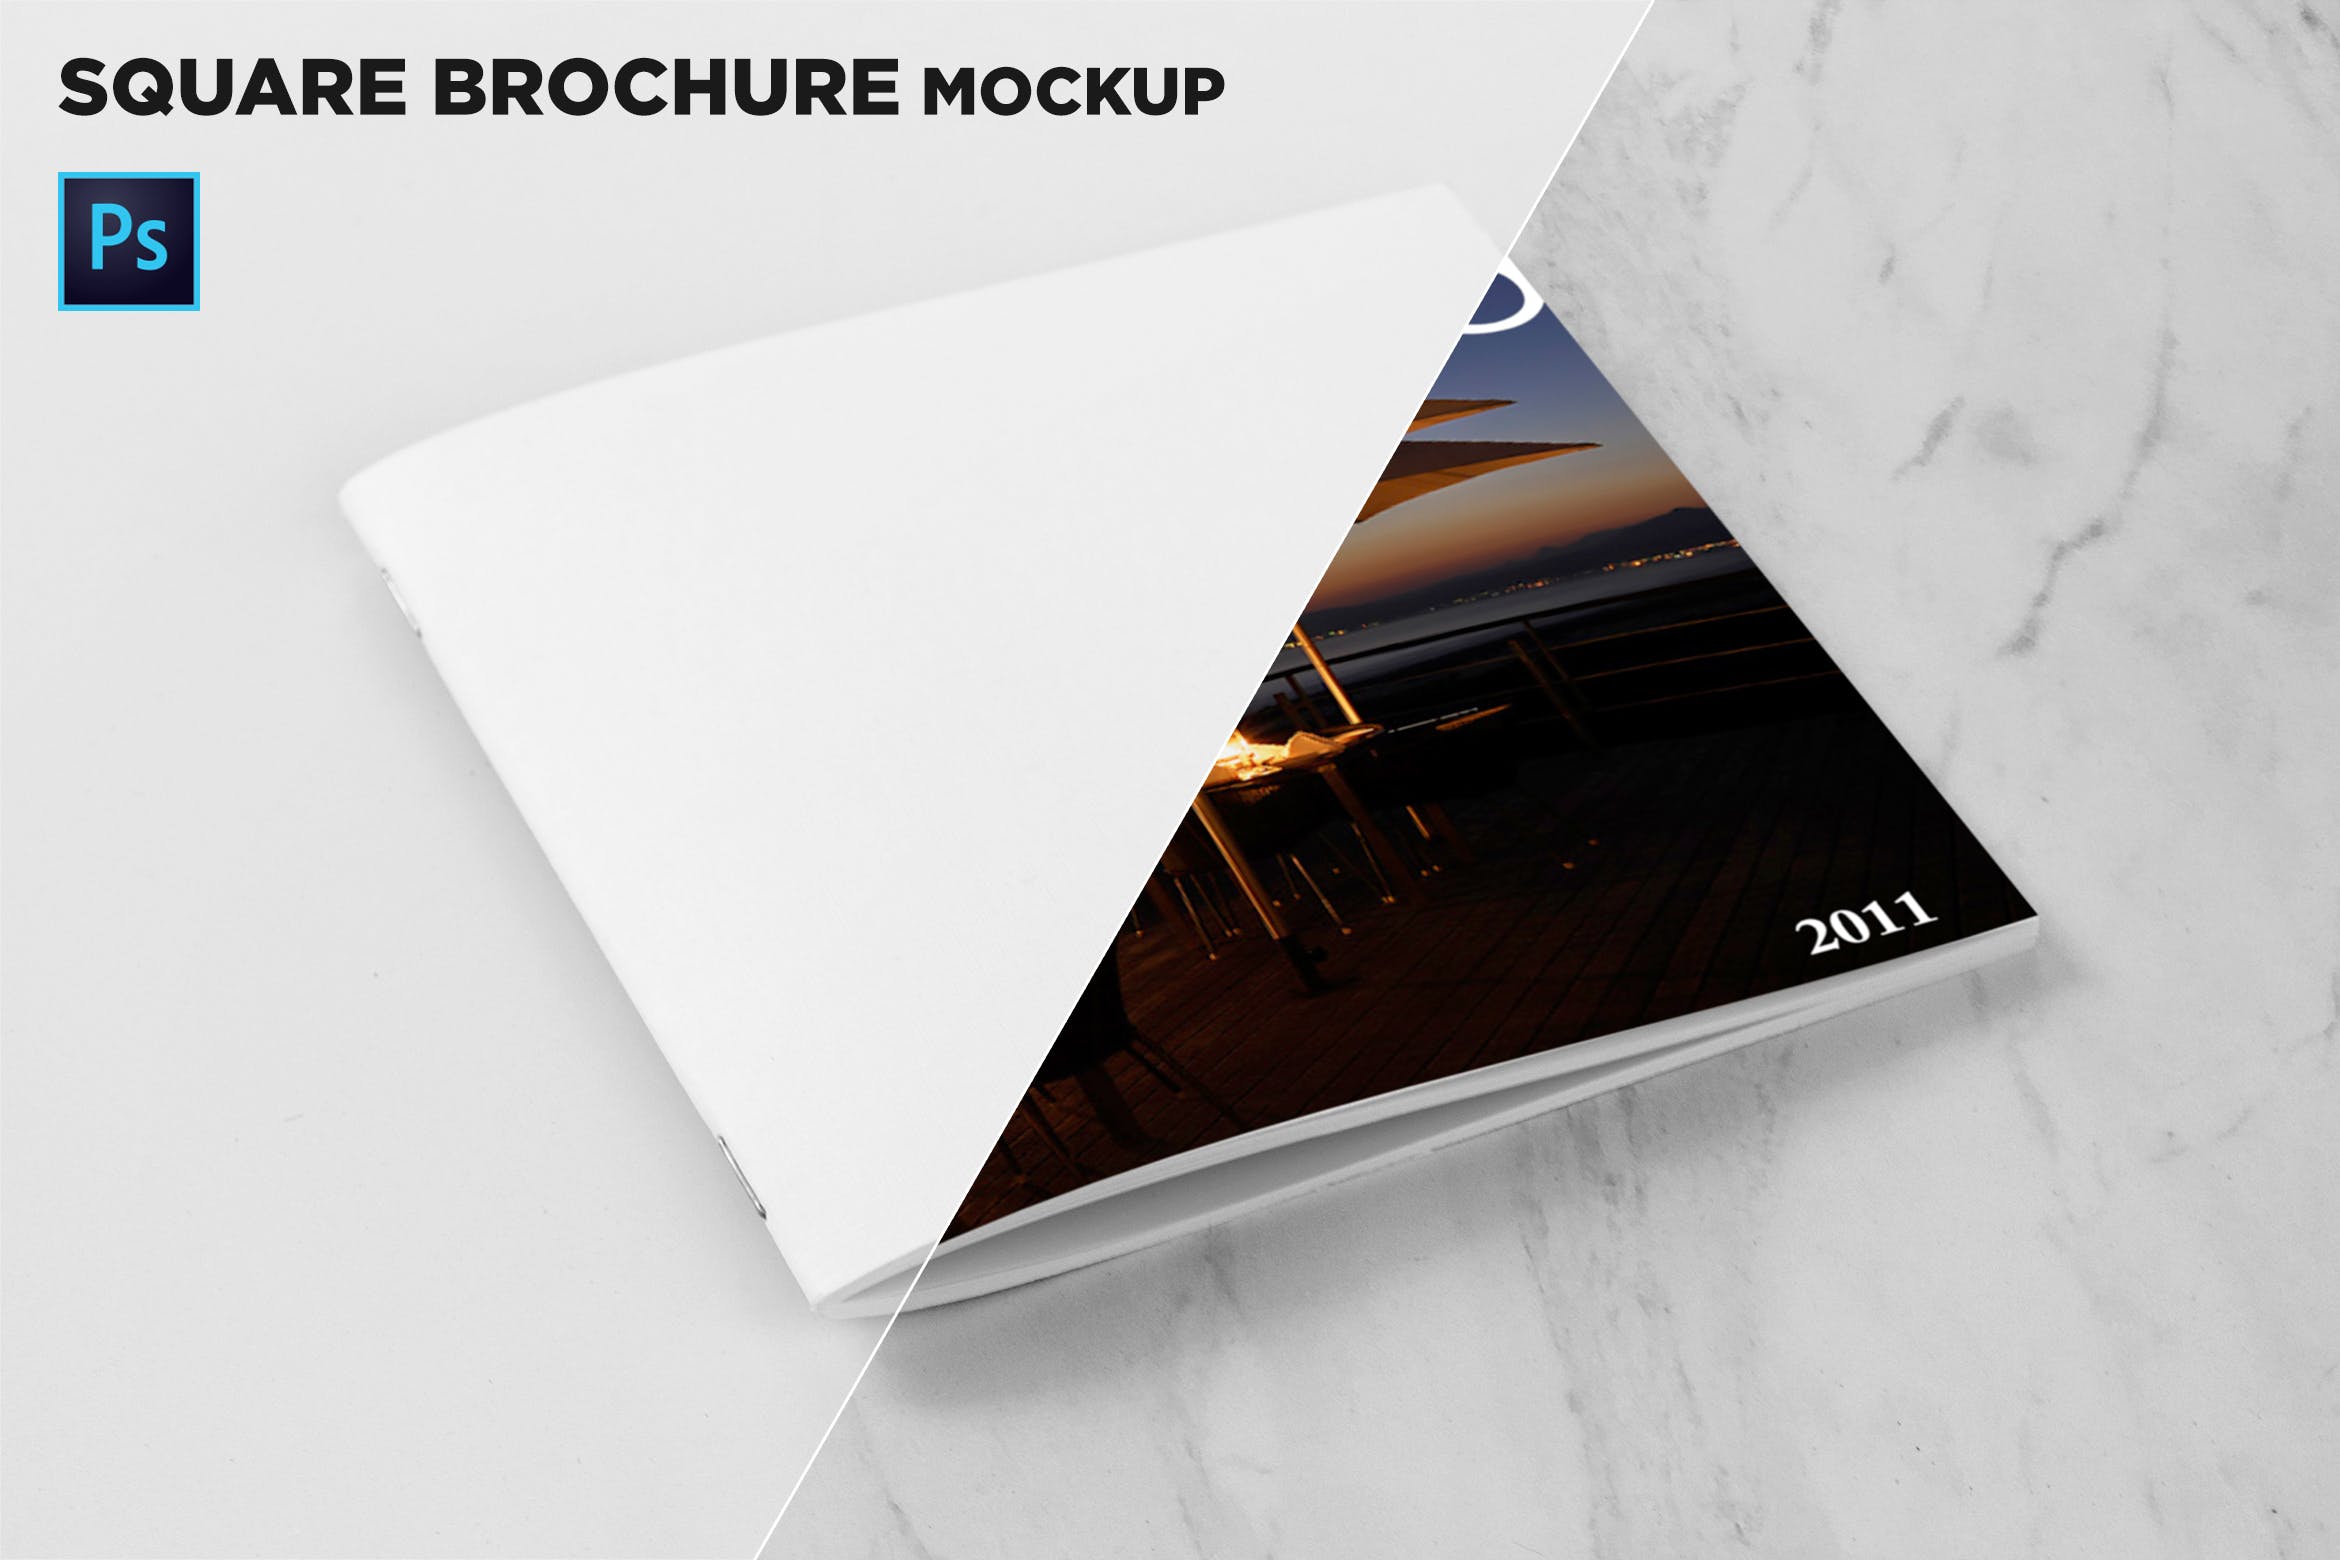 方形画册产品手册封面效果图样机第一素材精选 Square Brochure Cover Mockup插图